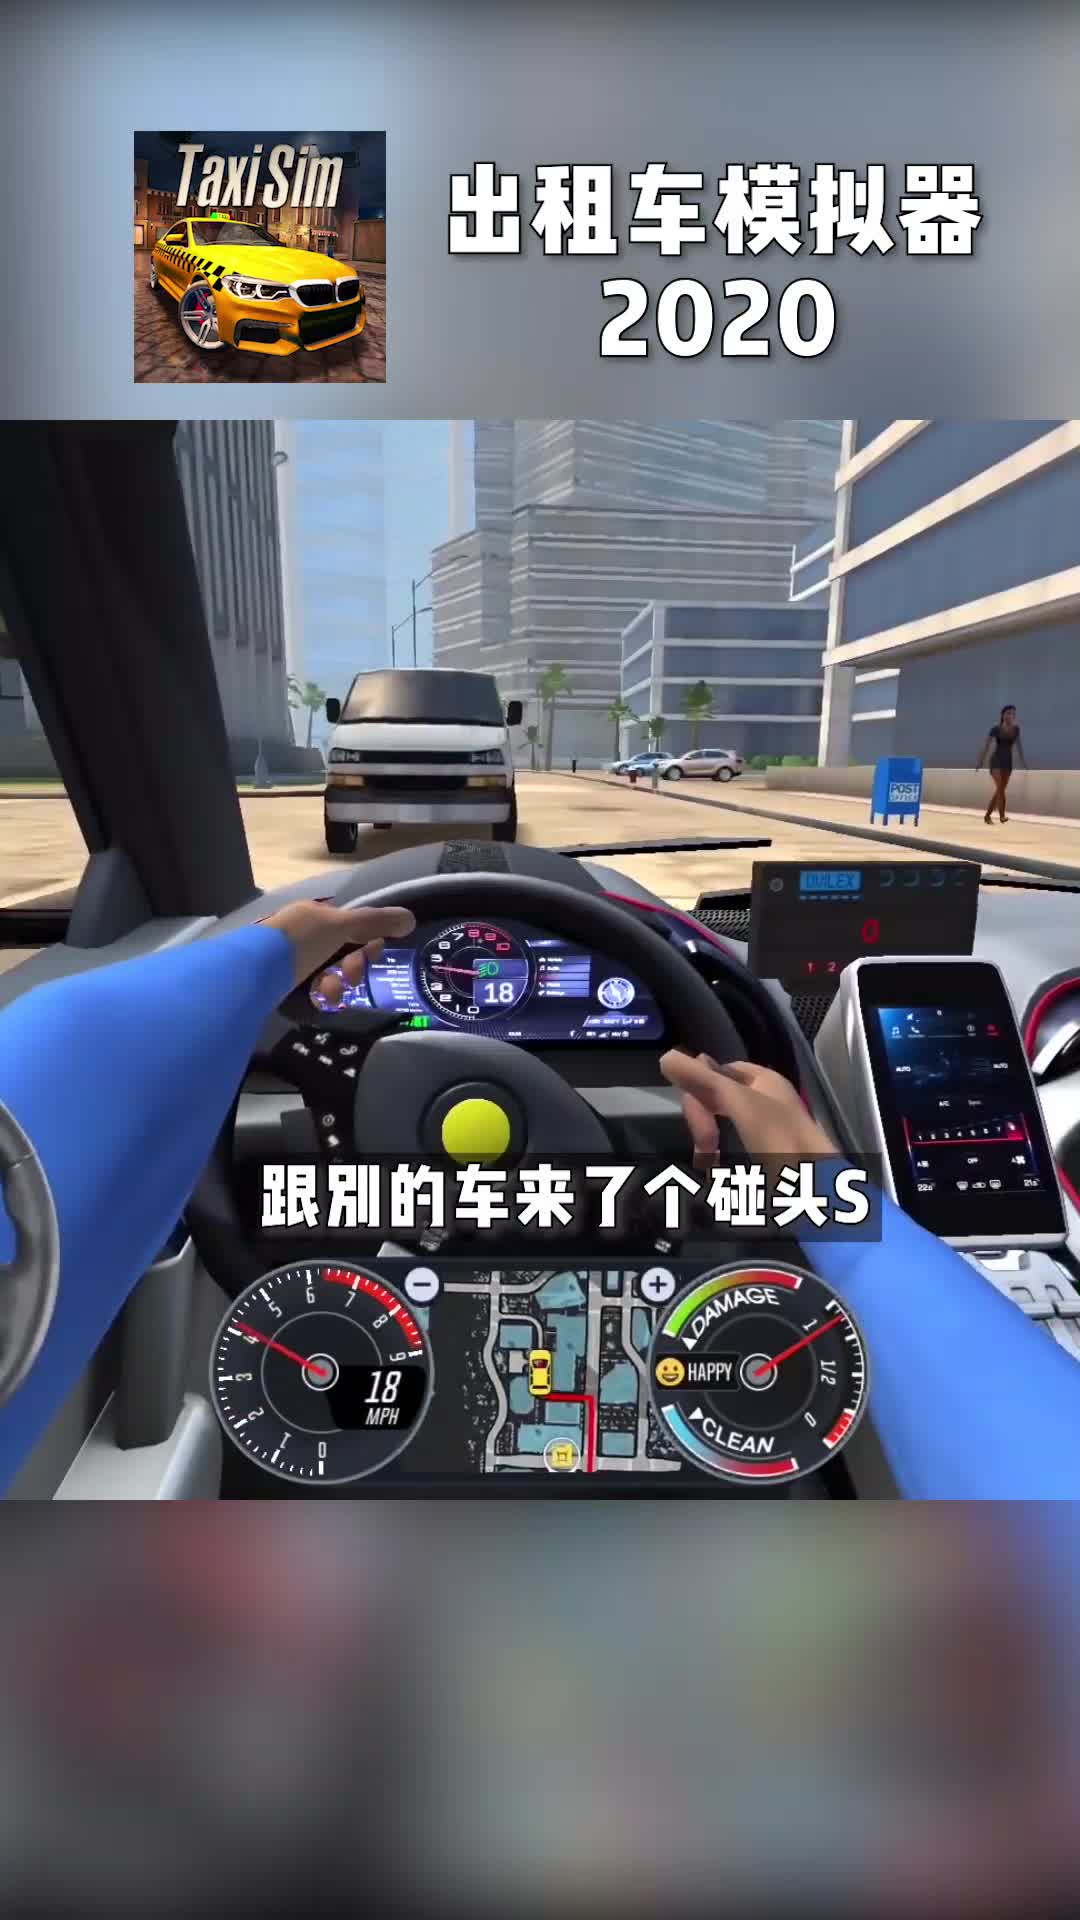 模拟驾驶游戏推荐 - 出租车模拟2020，游戏细节质量上乘